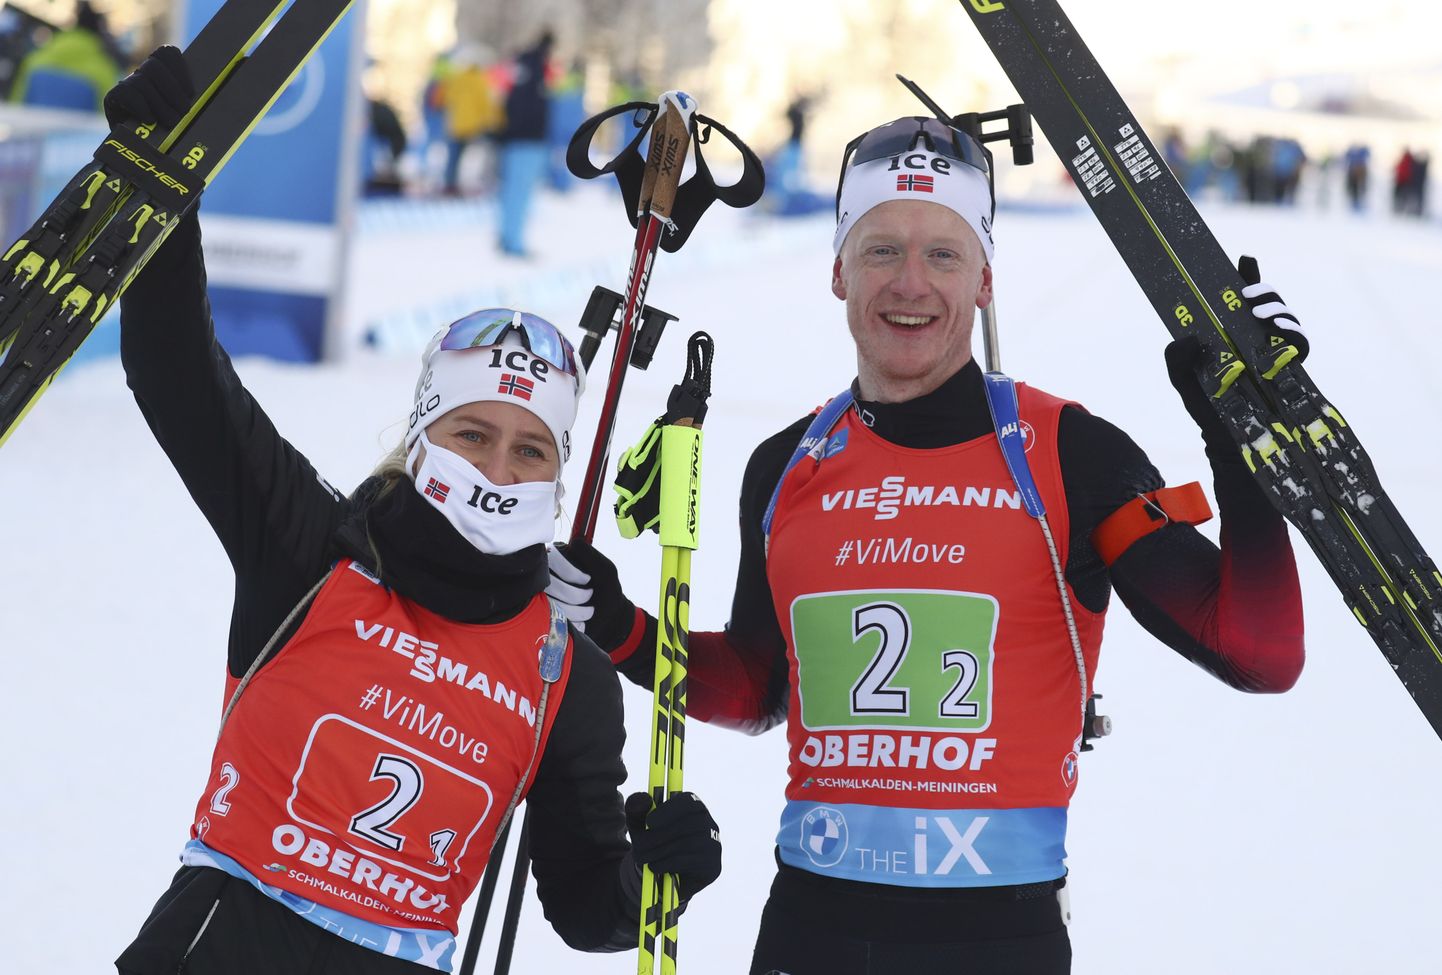 Päevad pole vennad. Oberhofis toimunud segapaaristeatesõidus pidi Norra võistkond leppima kolmanda kohaga. Pildil Tiril Eckhoff (vasakul ja Johannes Thingnes Bö.